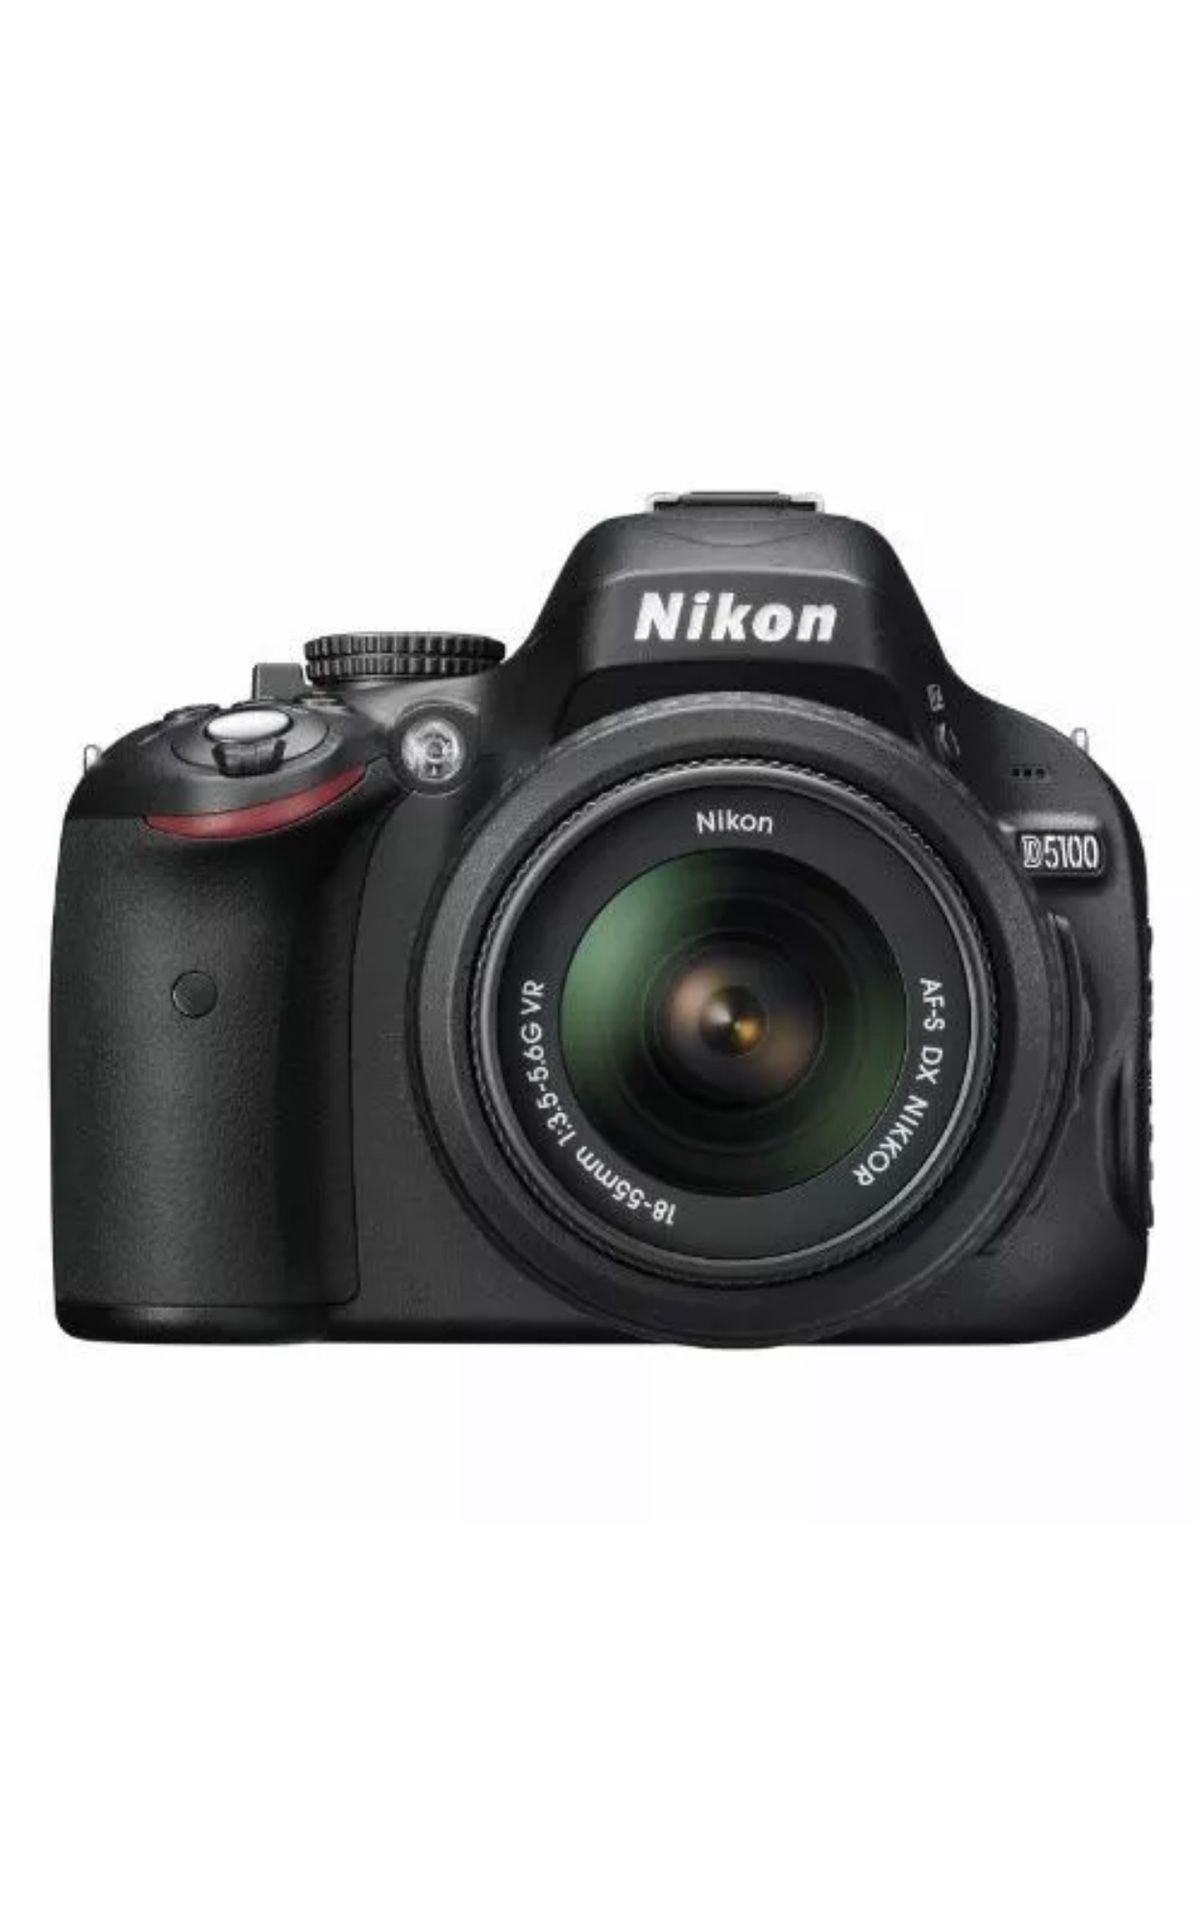 Nikon D5100 with AF-S 18-55mm f/3.5-5.6 VR